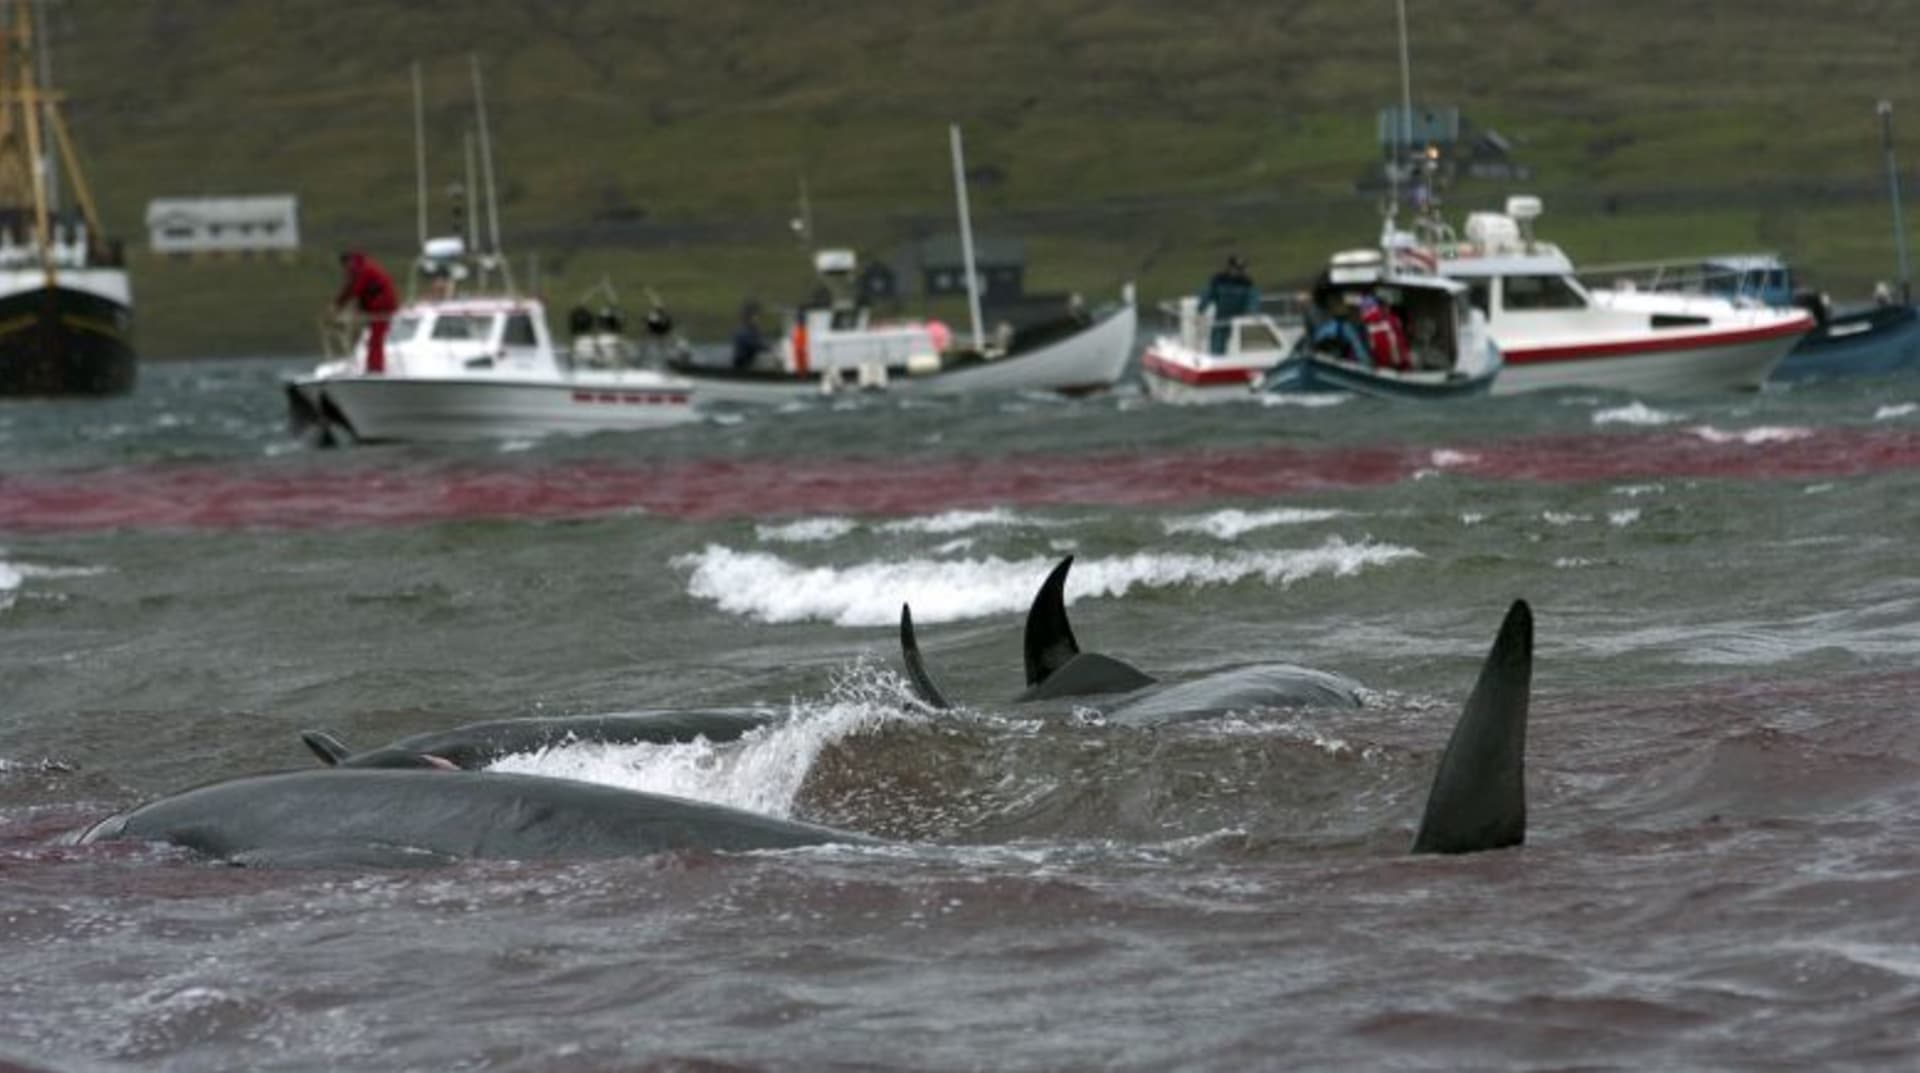 Aktivisté z organizace Sea Shepherd se nevzdávají. V minulých letech se jim podařilo zachránit stovky kytovců.